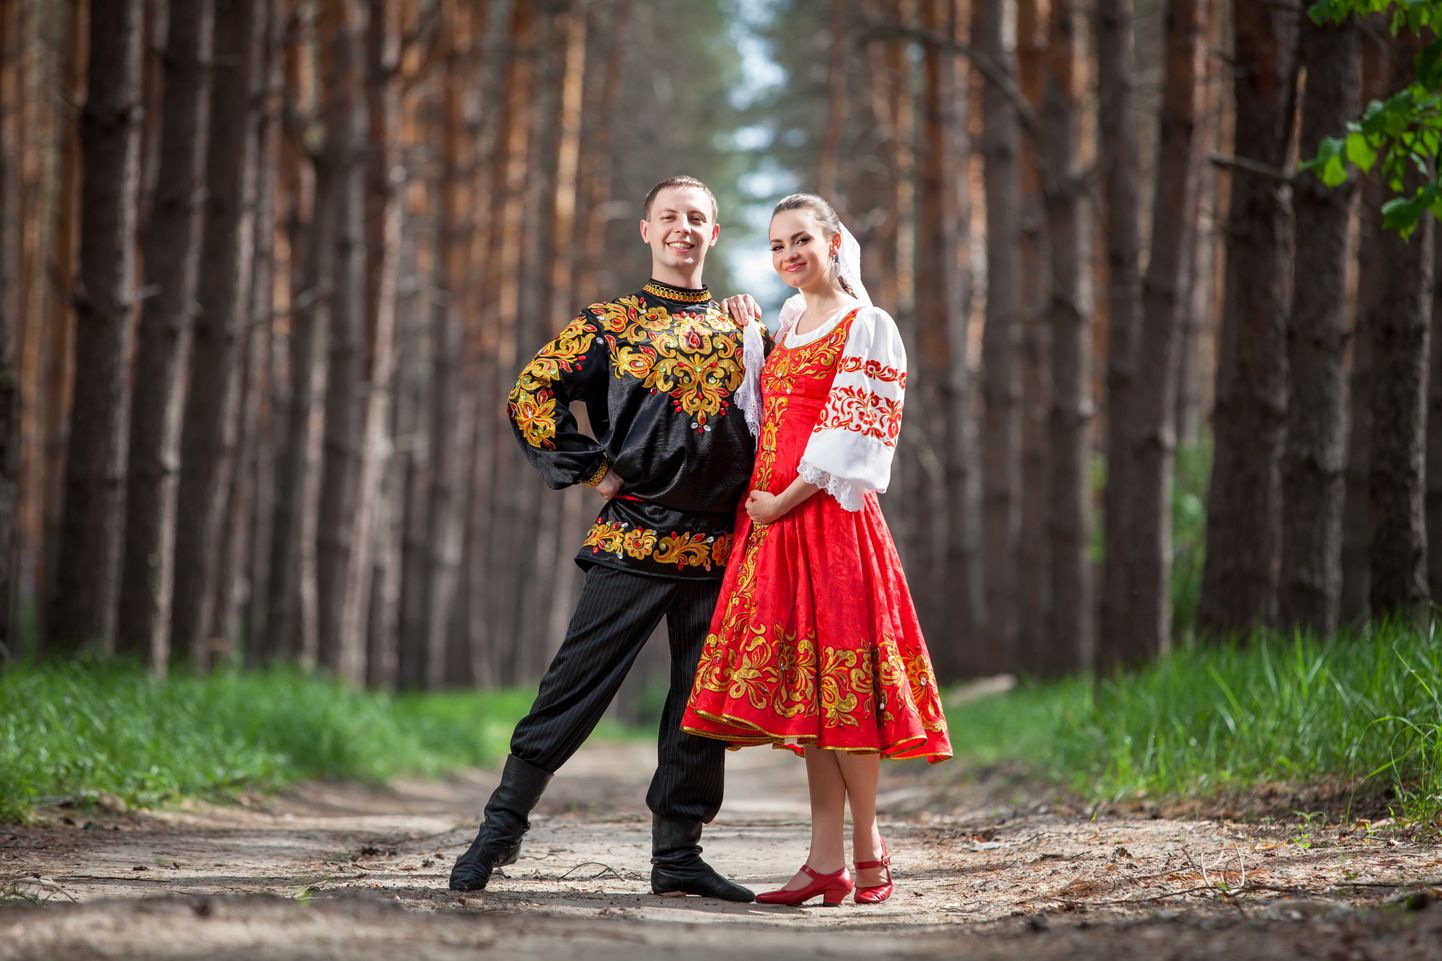 Мужчина и женщина в народных русских костюмах. Иллюстративное фото.